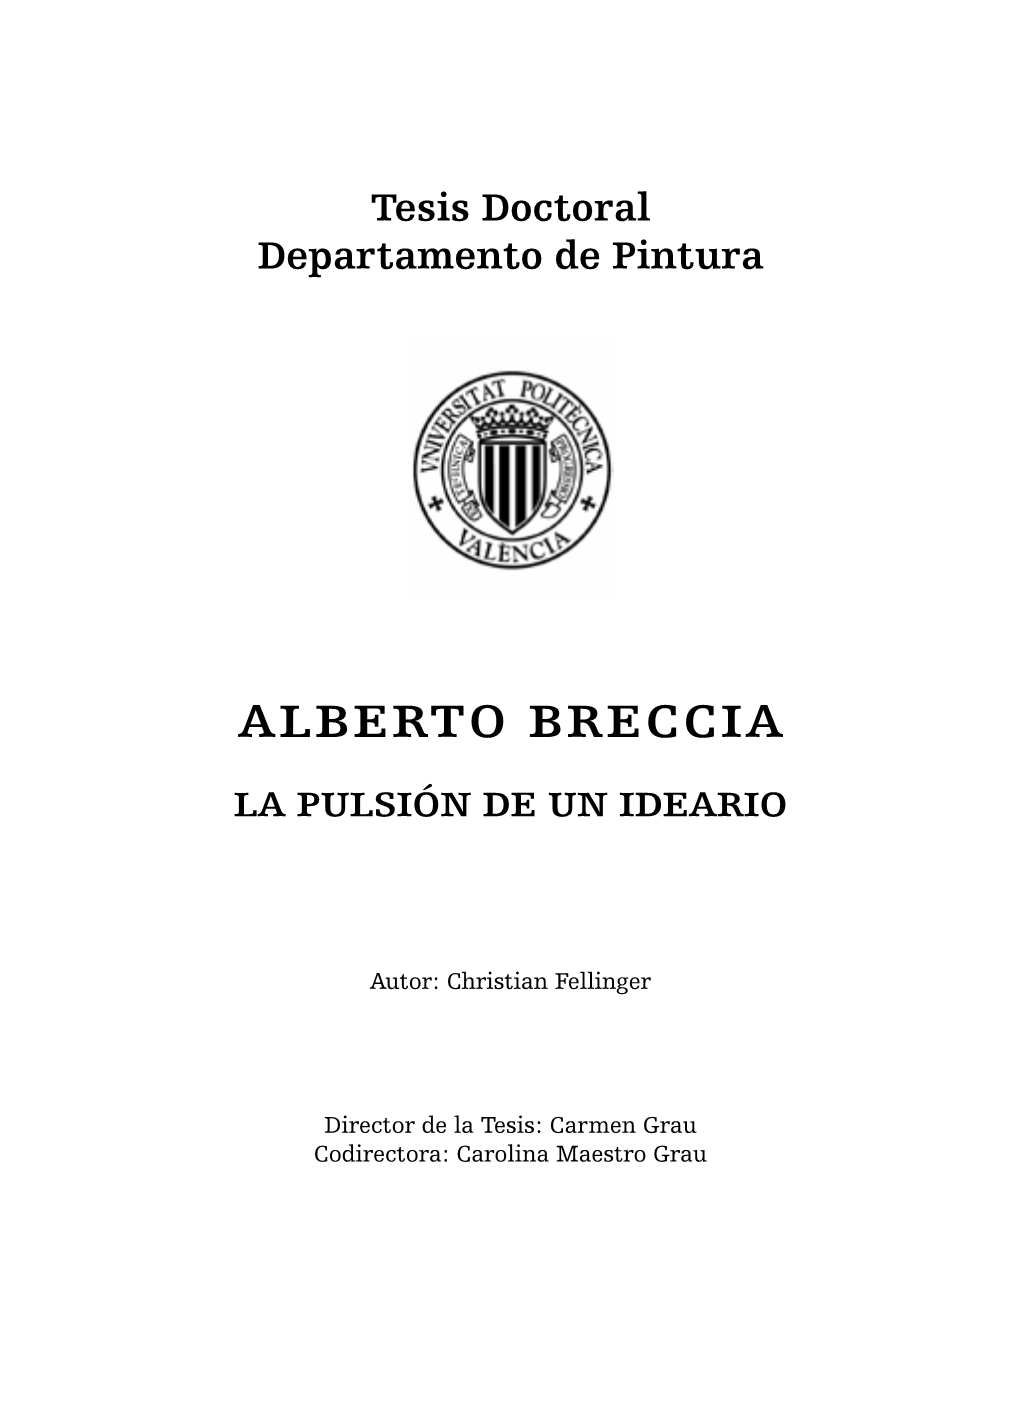 Alberto Breccia